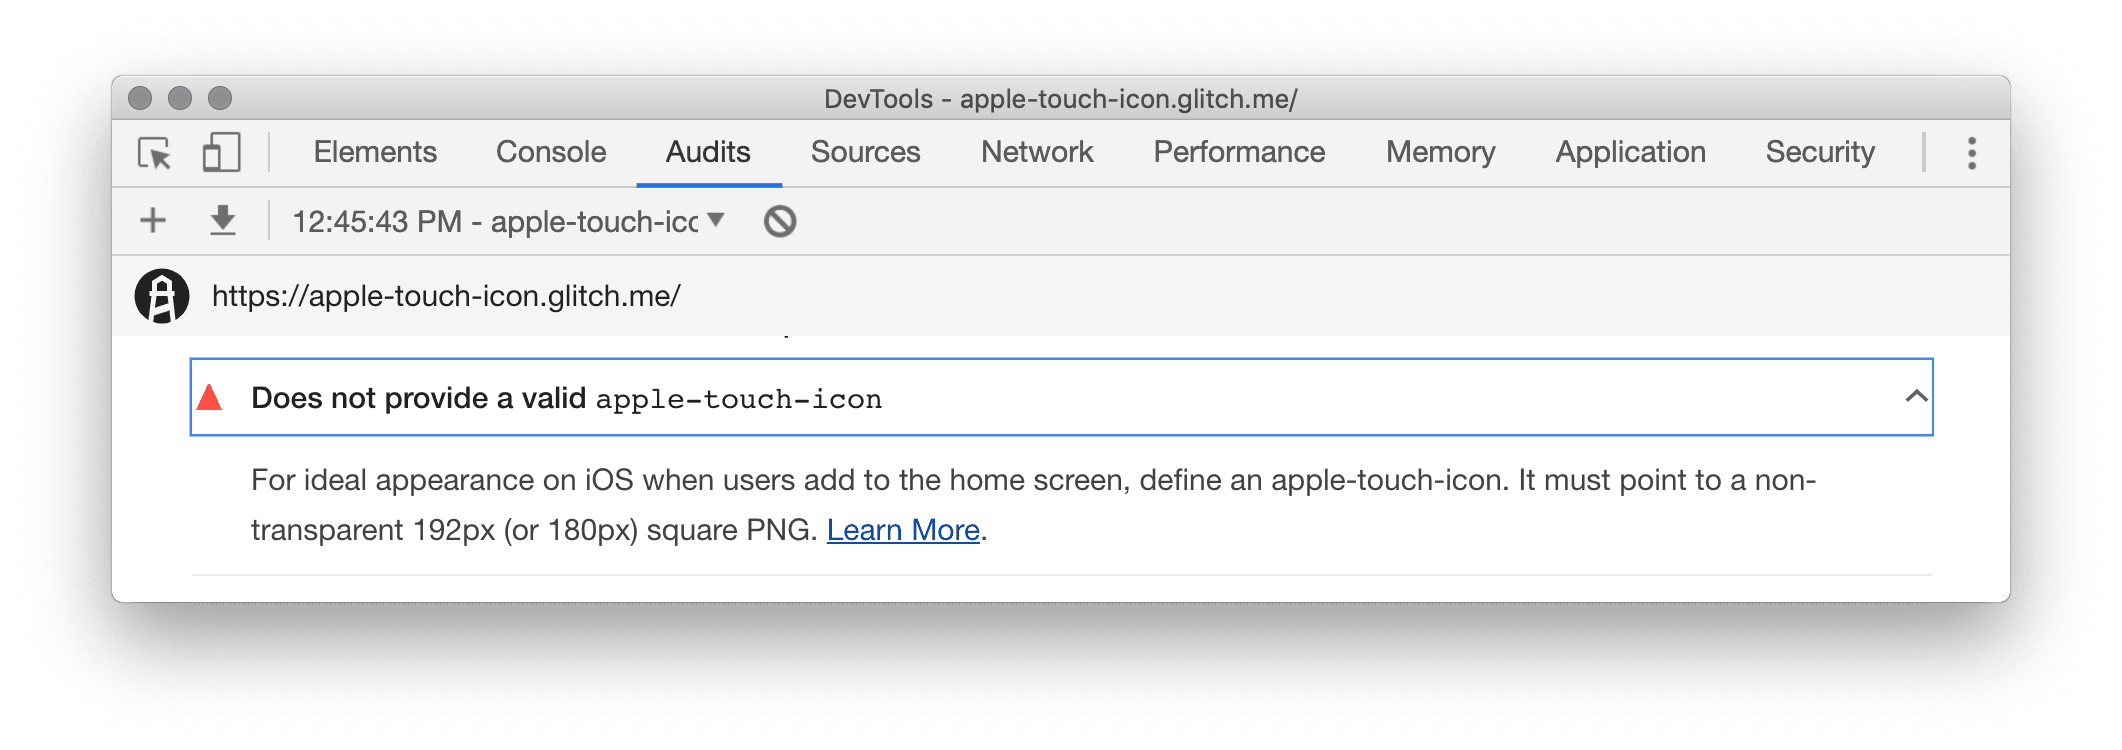 لا يتم تقديم رمز apple- touch-icon صالح